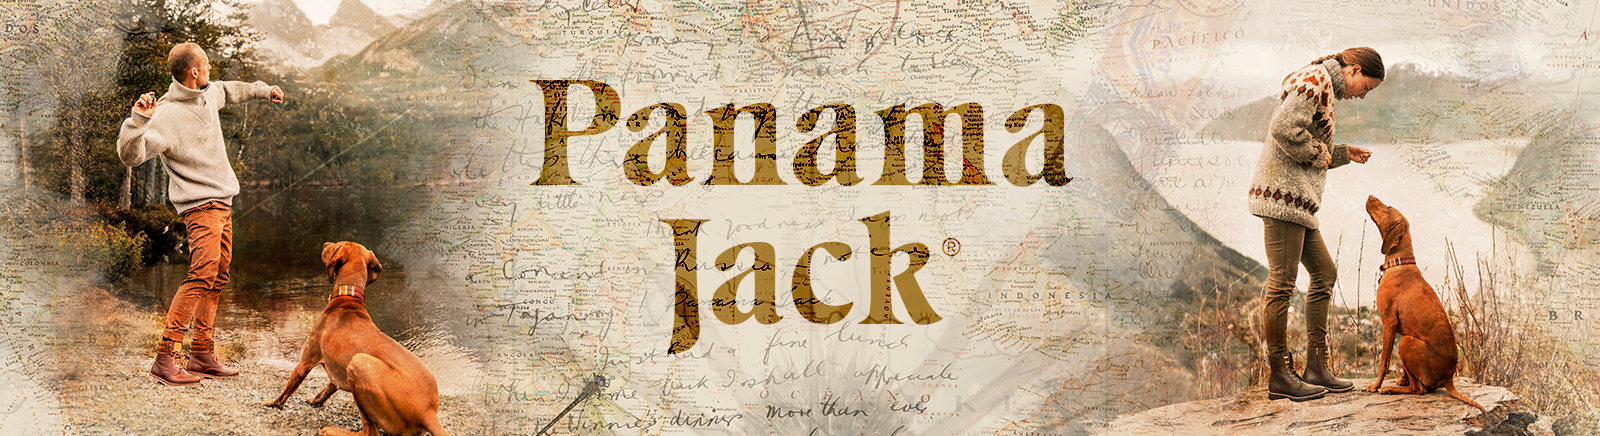 Panama Jack Stiefel für Herren im Online-Shop von GISY kaufen